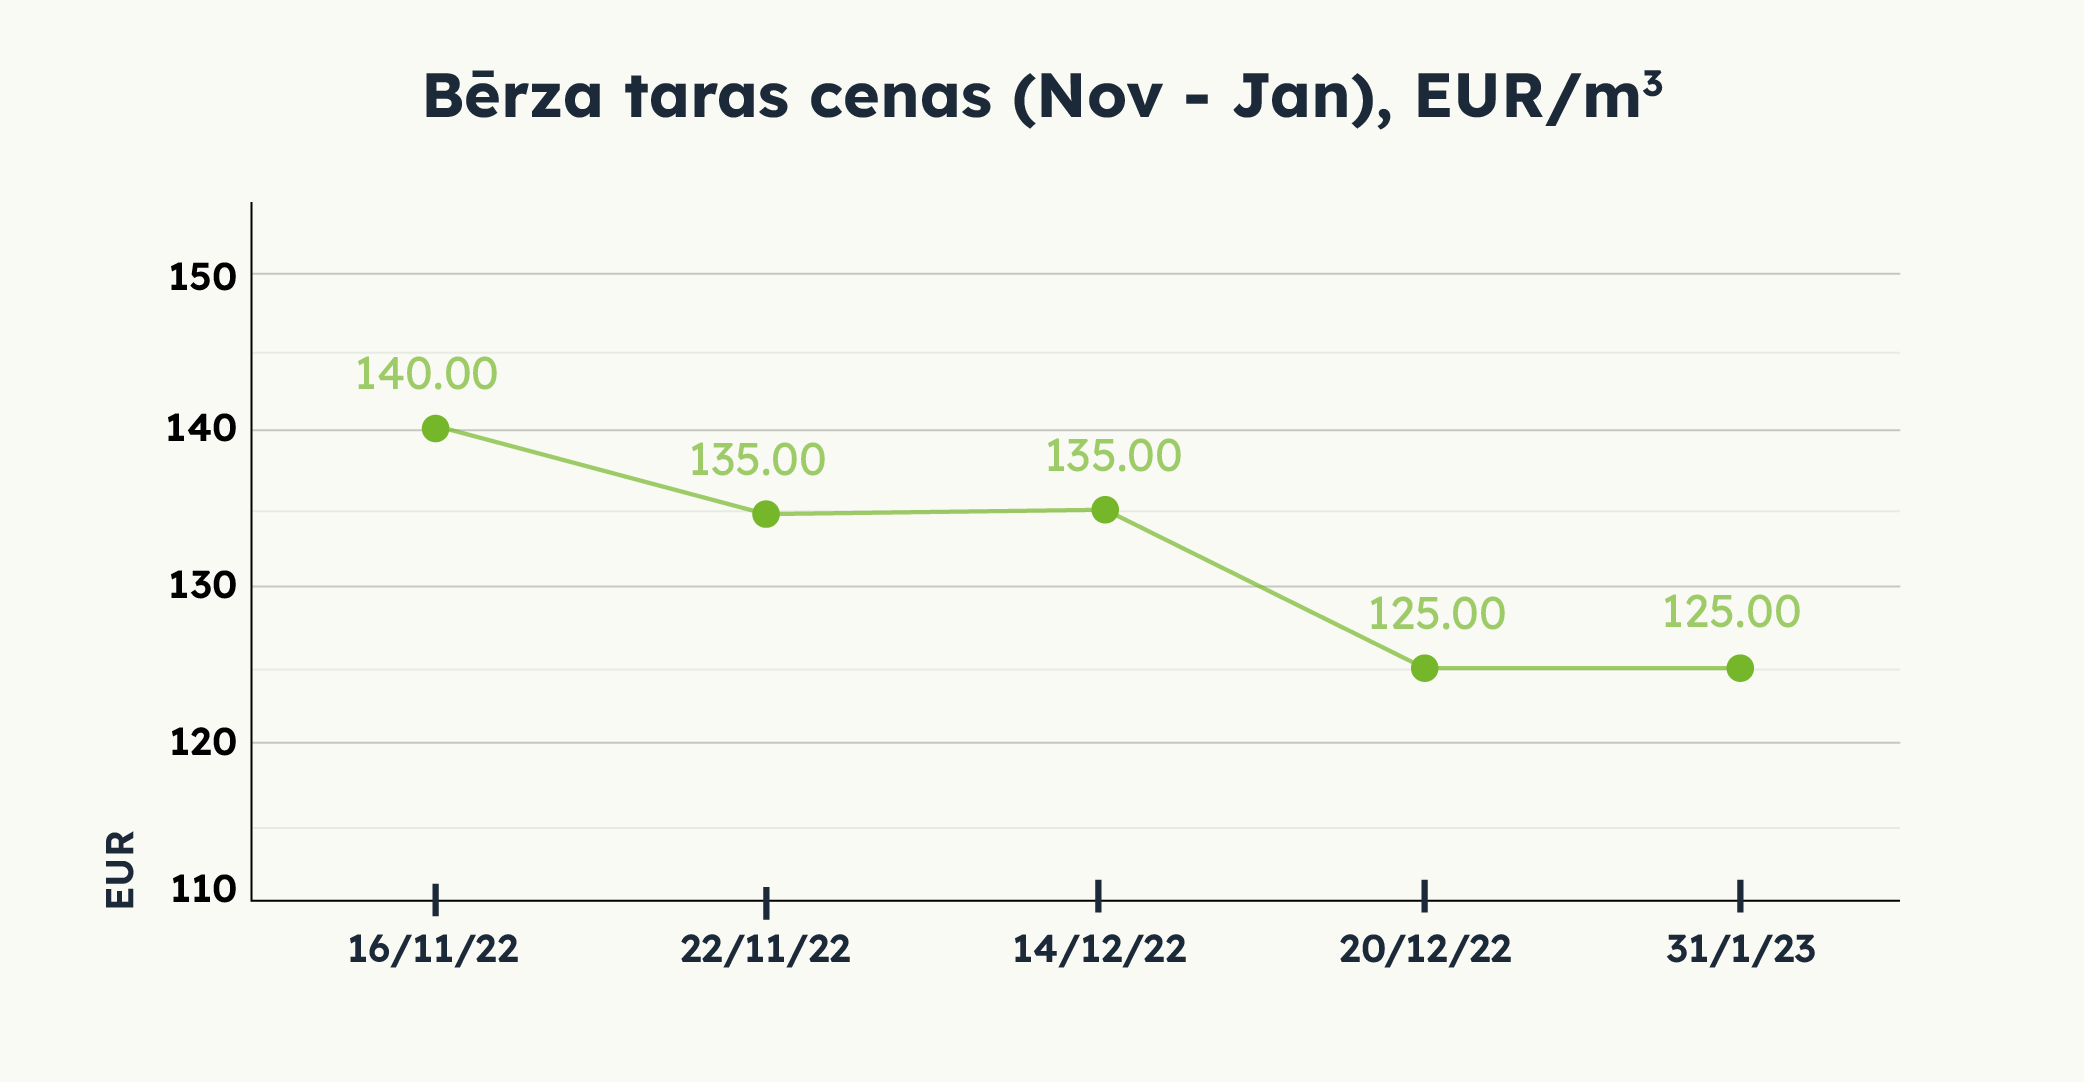 Bērza taras cenas (Nov - Jan), EUR/m3